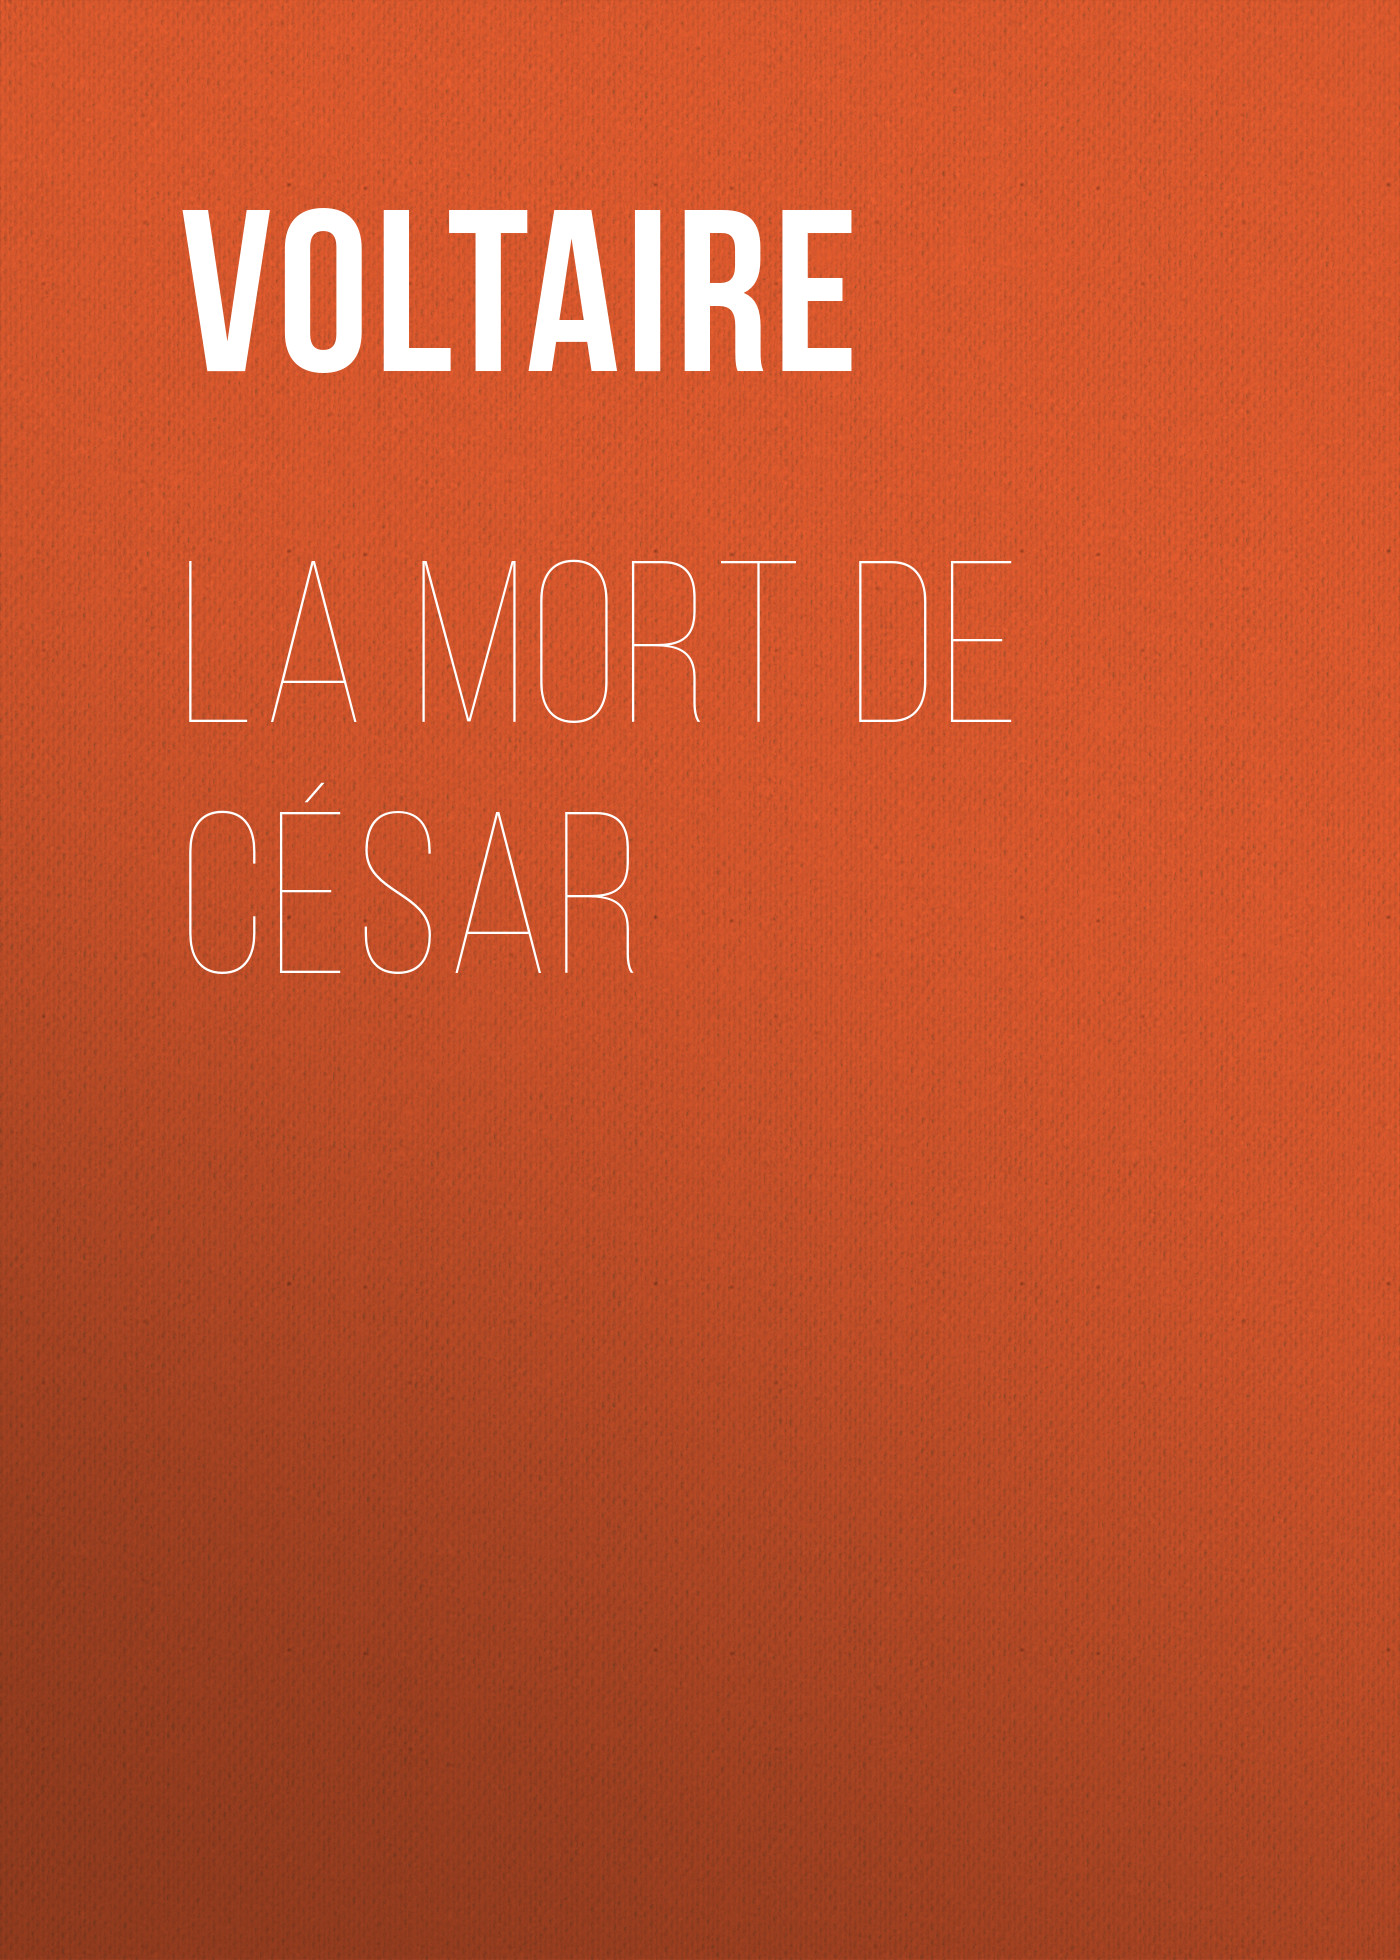 Книга La mort de César из серии , созданная  Voltaire, может относится к жанру Литература 18 века, Зарубежная классика, Зарубежная драматургия. Стоимость электронной книги La mort de César с идентификатором 25559756 составляет 0 руб.